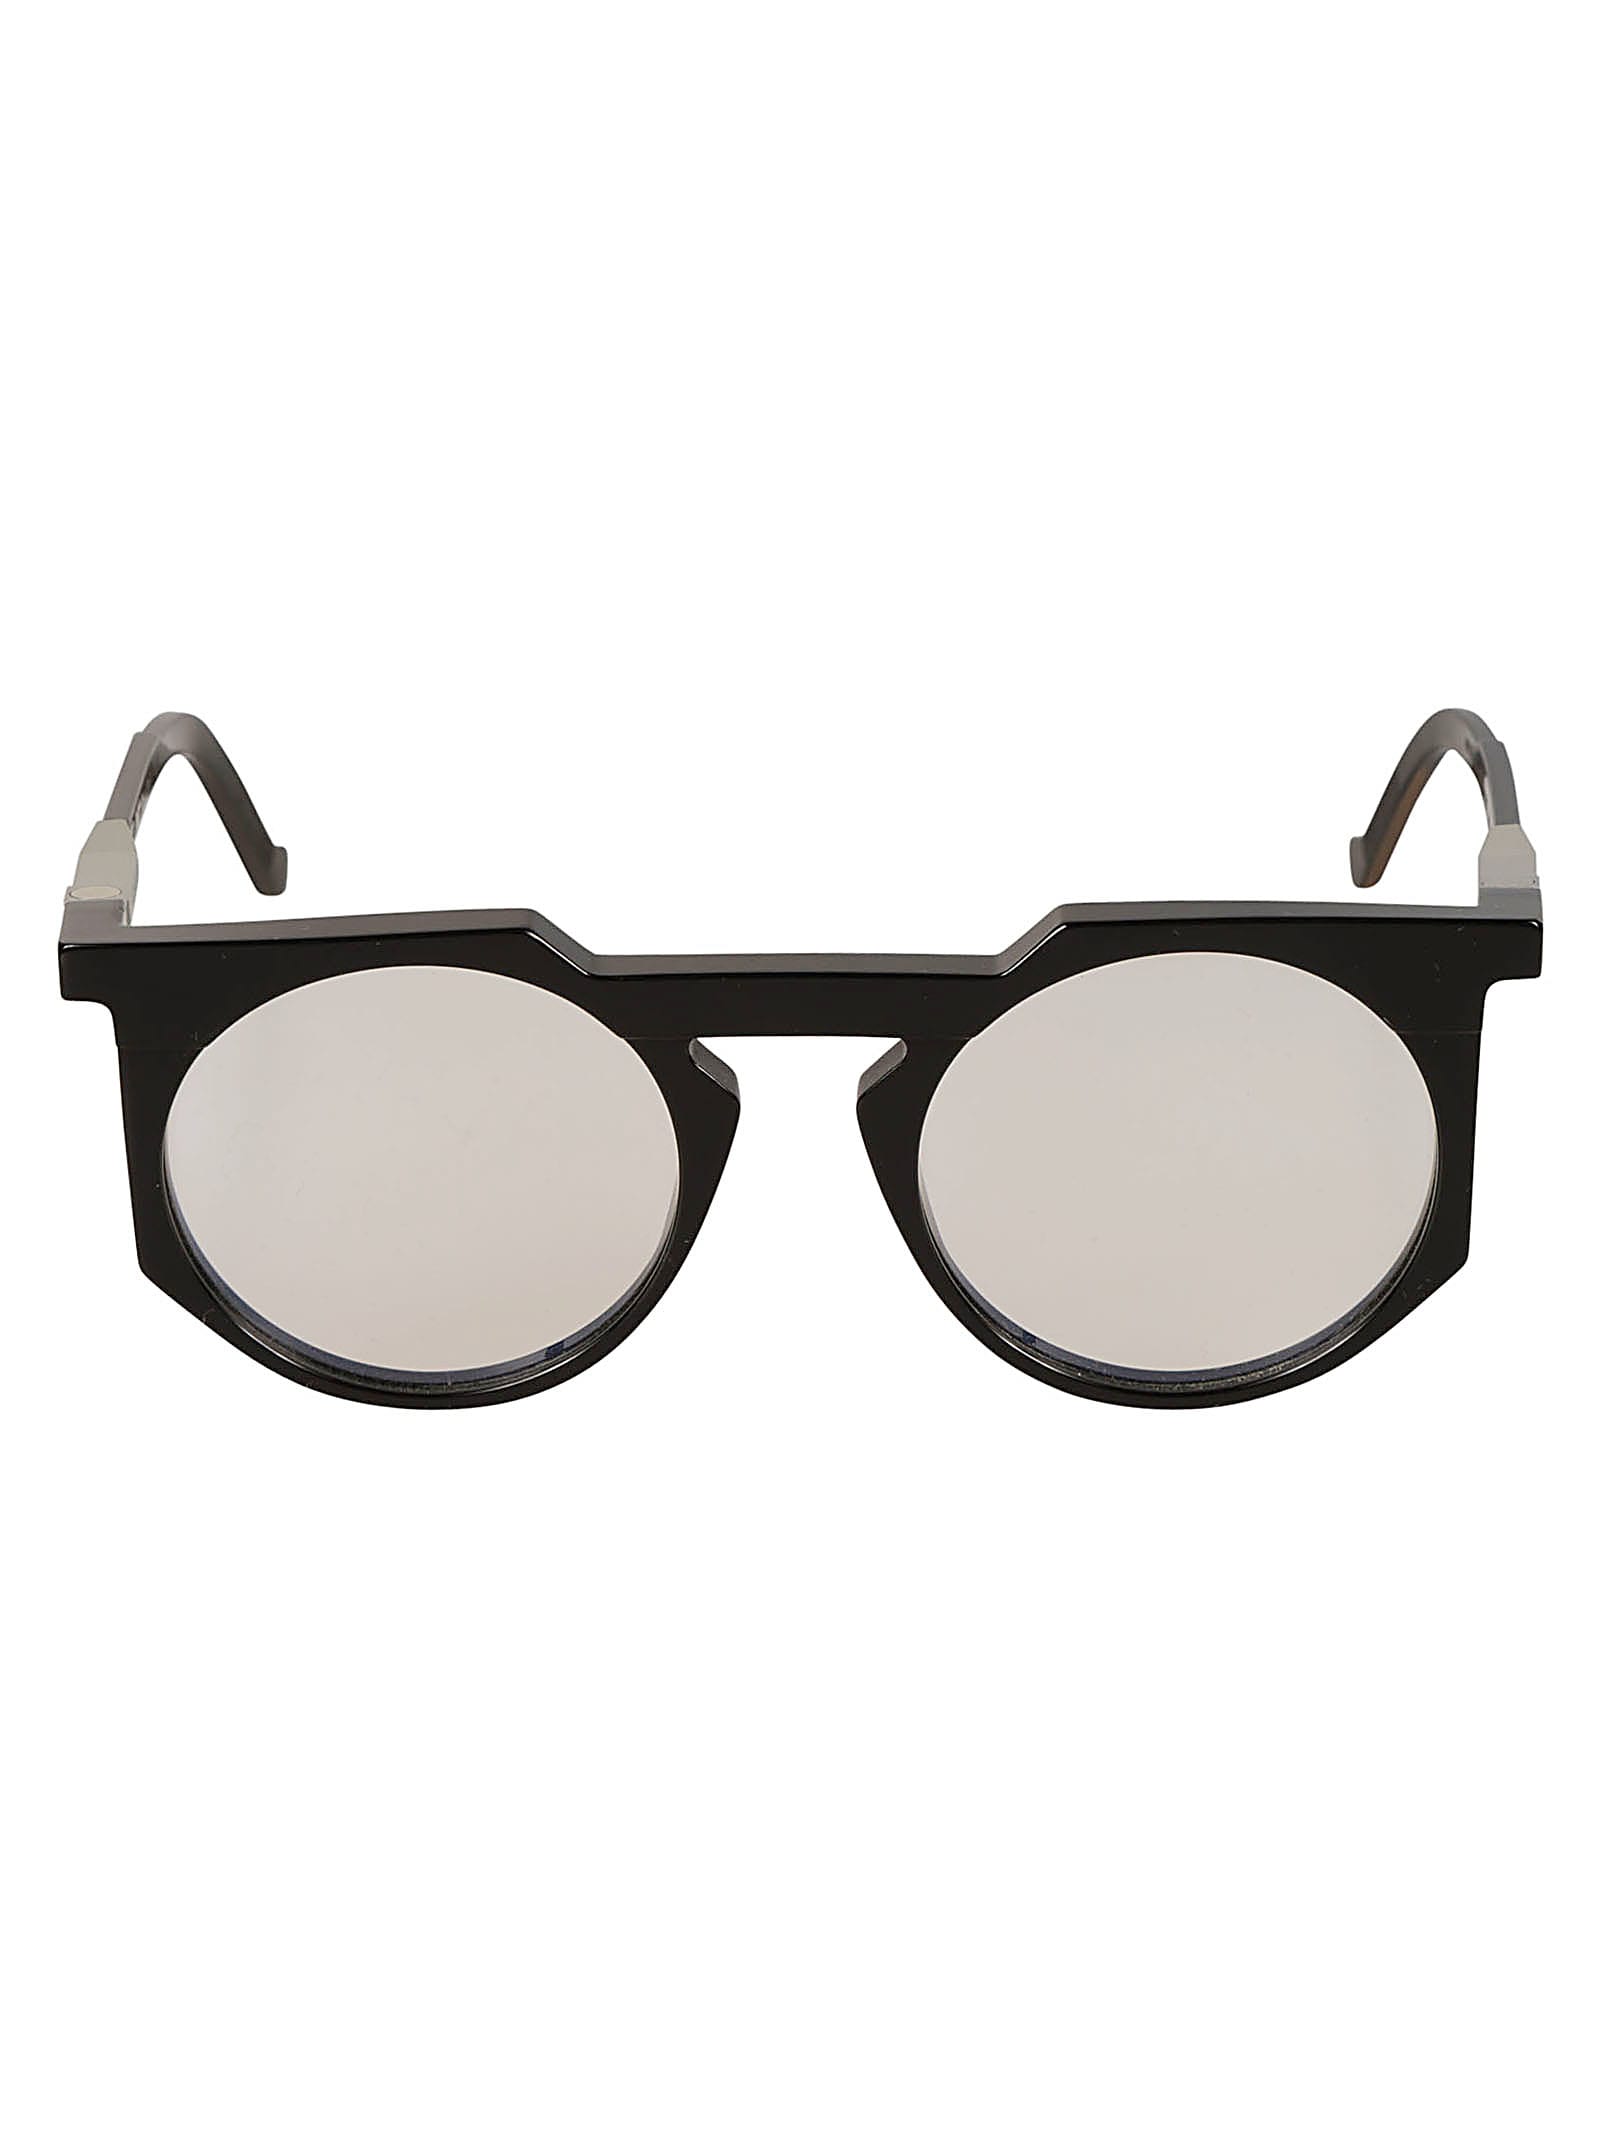 Clear Lens Round Frame Glasses Glasses